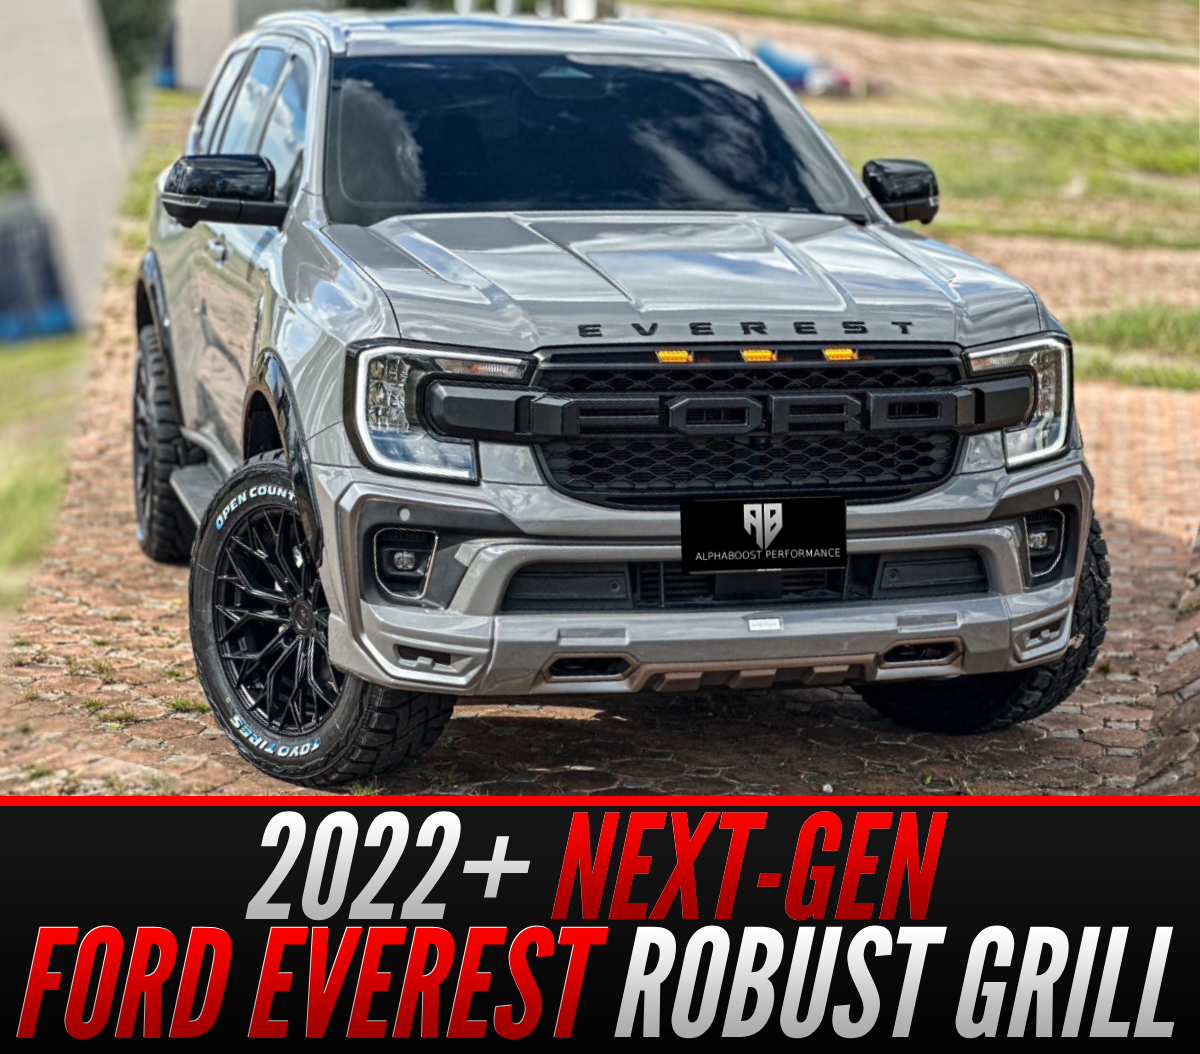 2022+ Ford Everest Next-Gen ROBUST Grill - AFTERMARKET - LED - RAPTOR STYLE